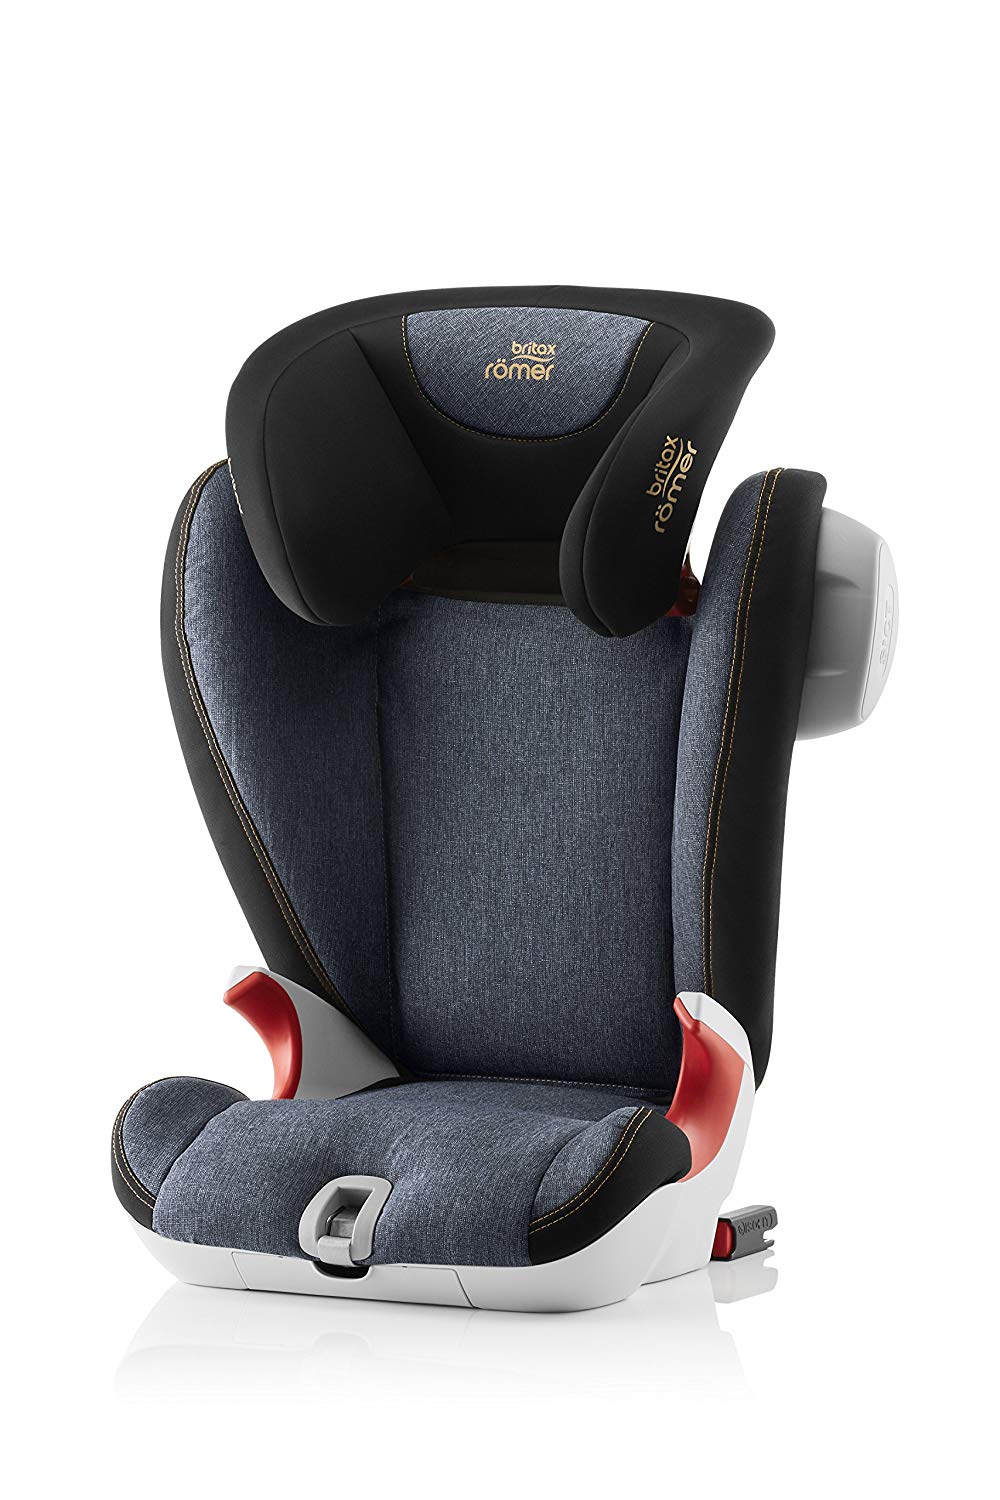 Britax Römer Kidfix SL SICT Child Car Seat Group 2/3, 15 - 36 kg. with SICT